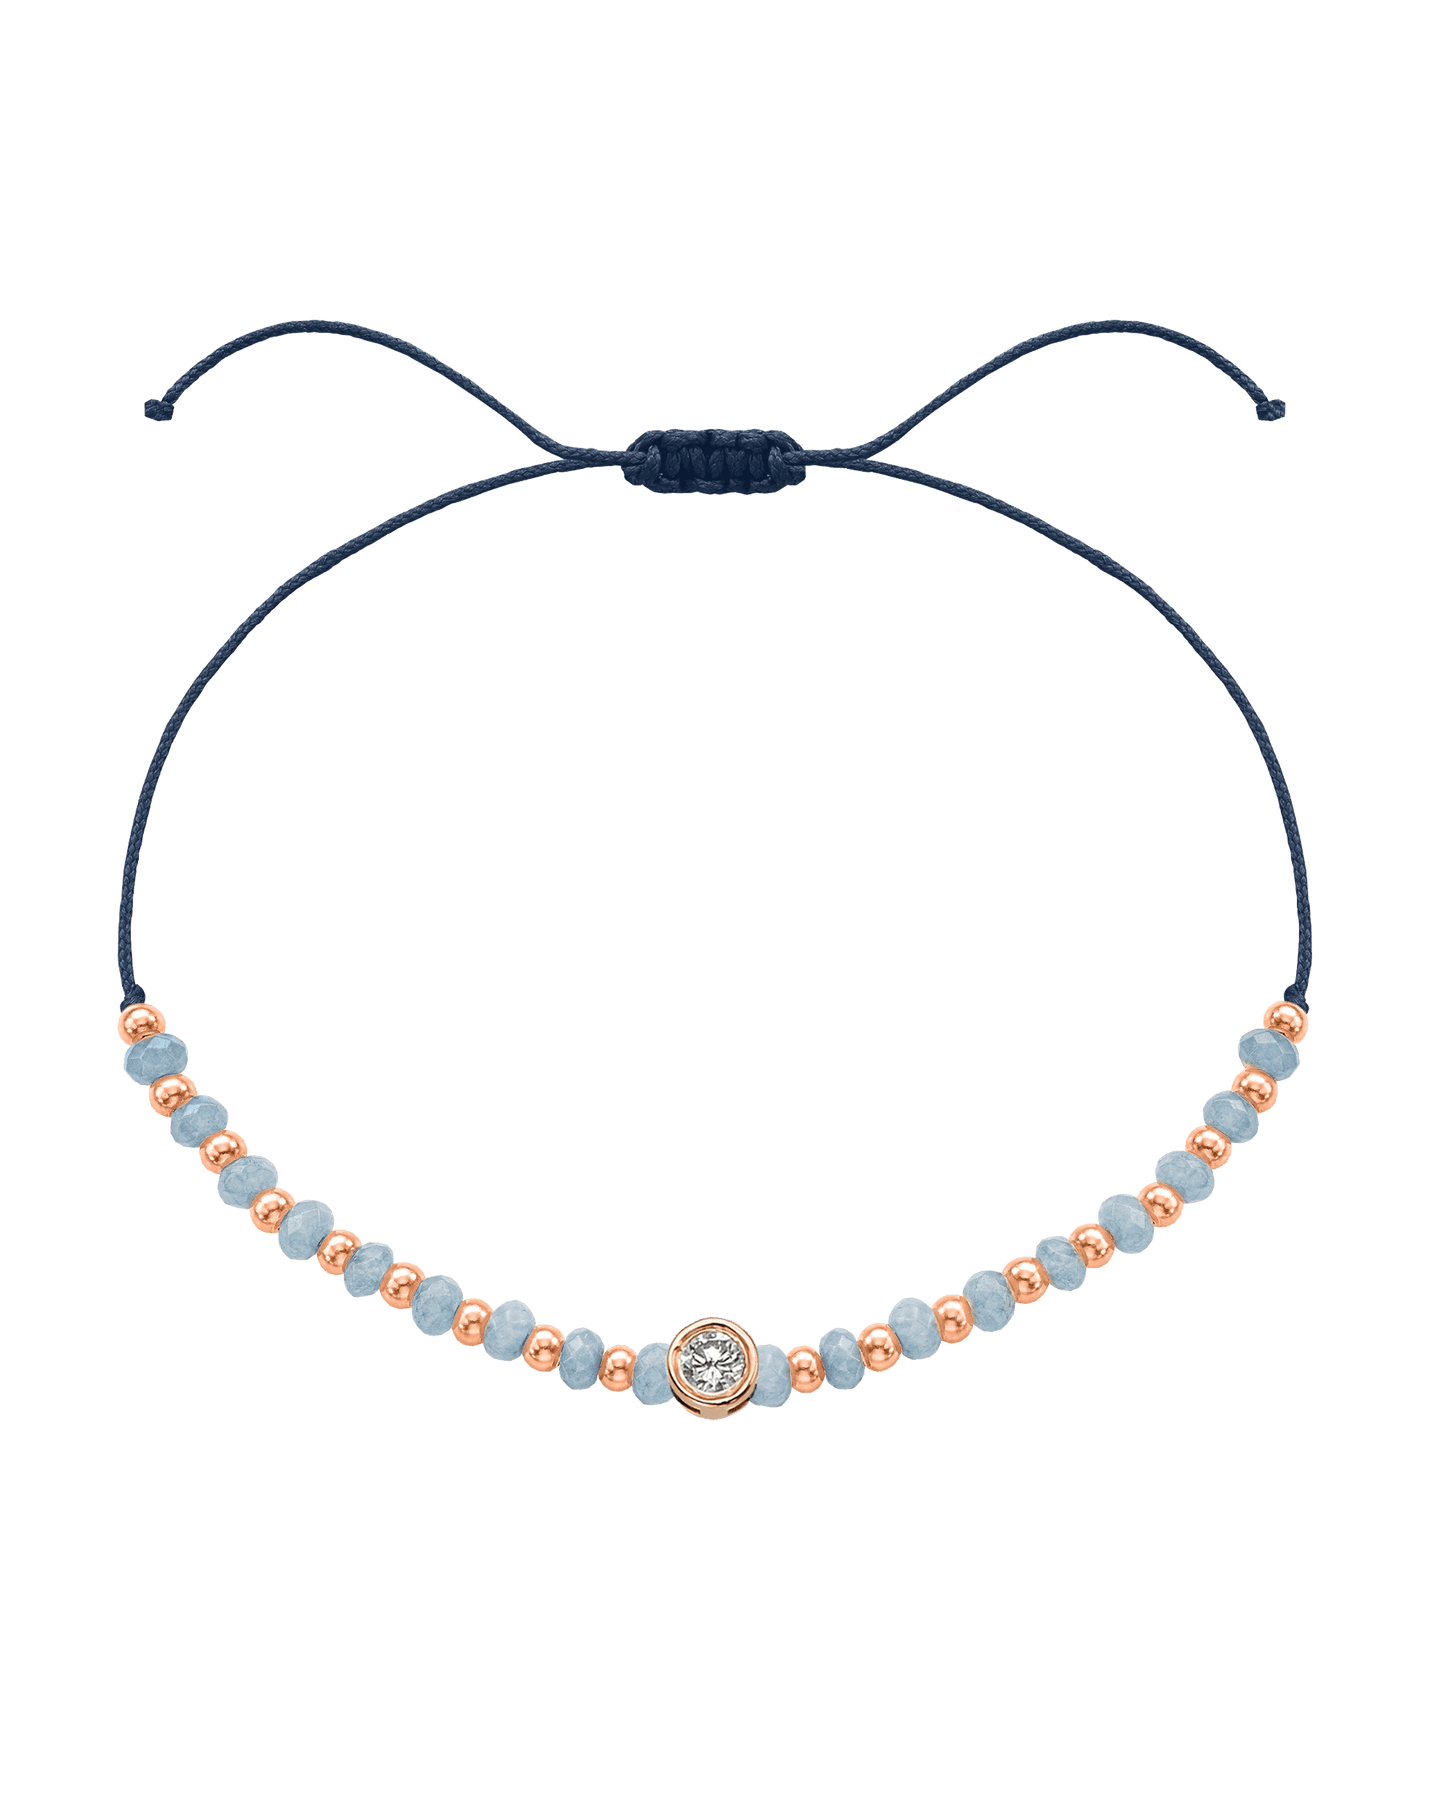 Celestite Gemstone String of Love Bracelet for Mindfulness - 14K Rose Gold Bracelets 14K Solid Gold Navy Blue Large: 0.1ct 